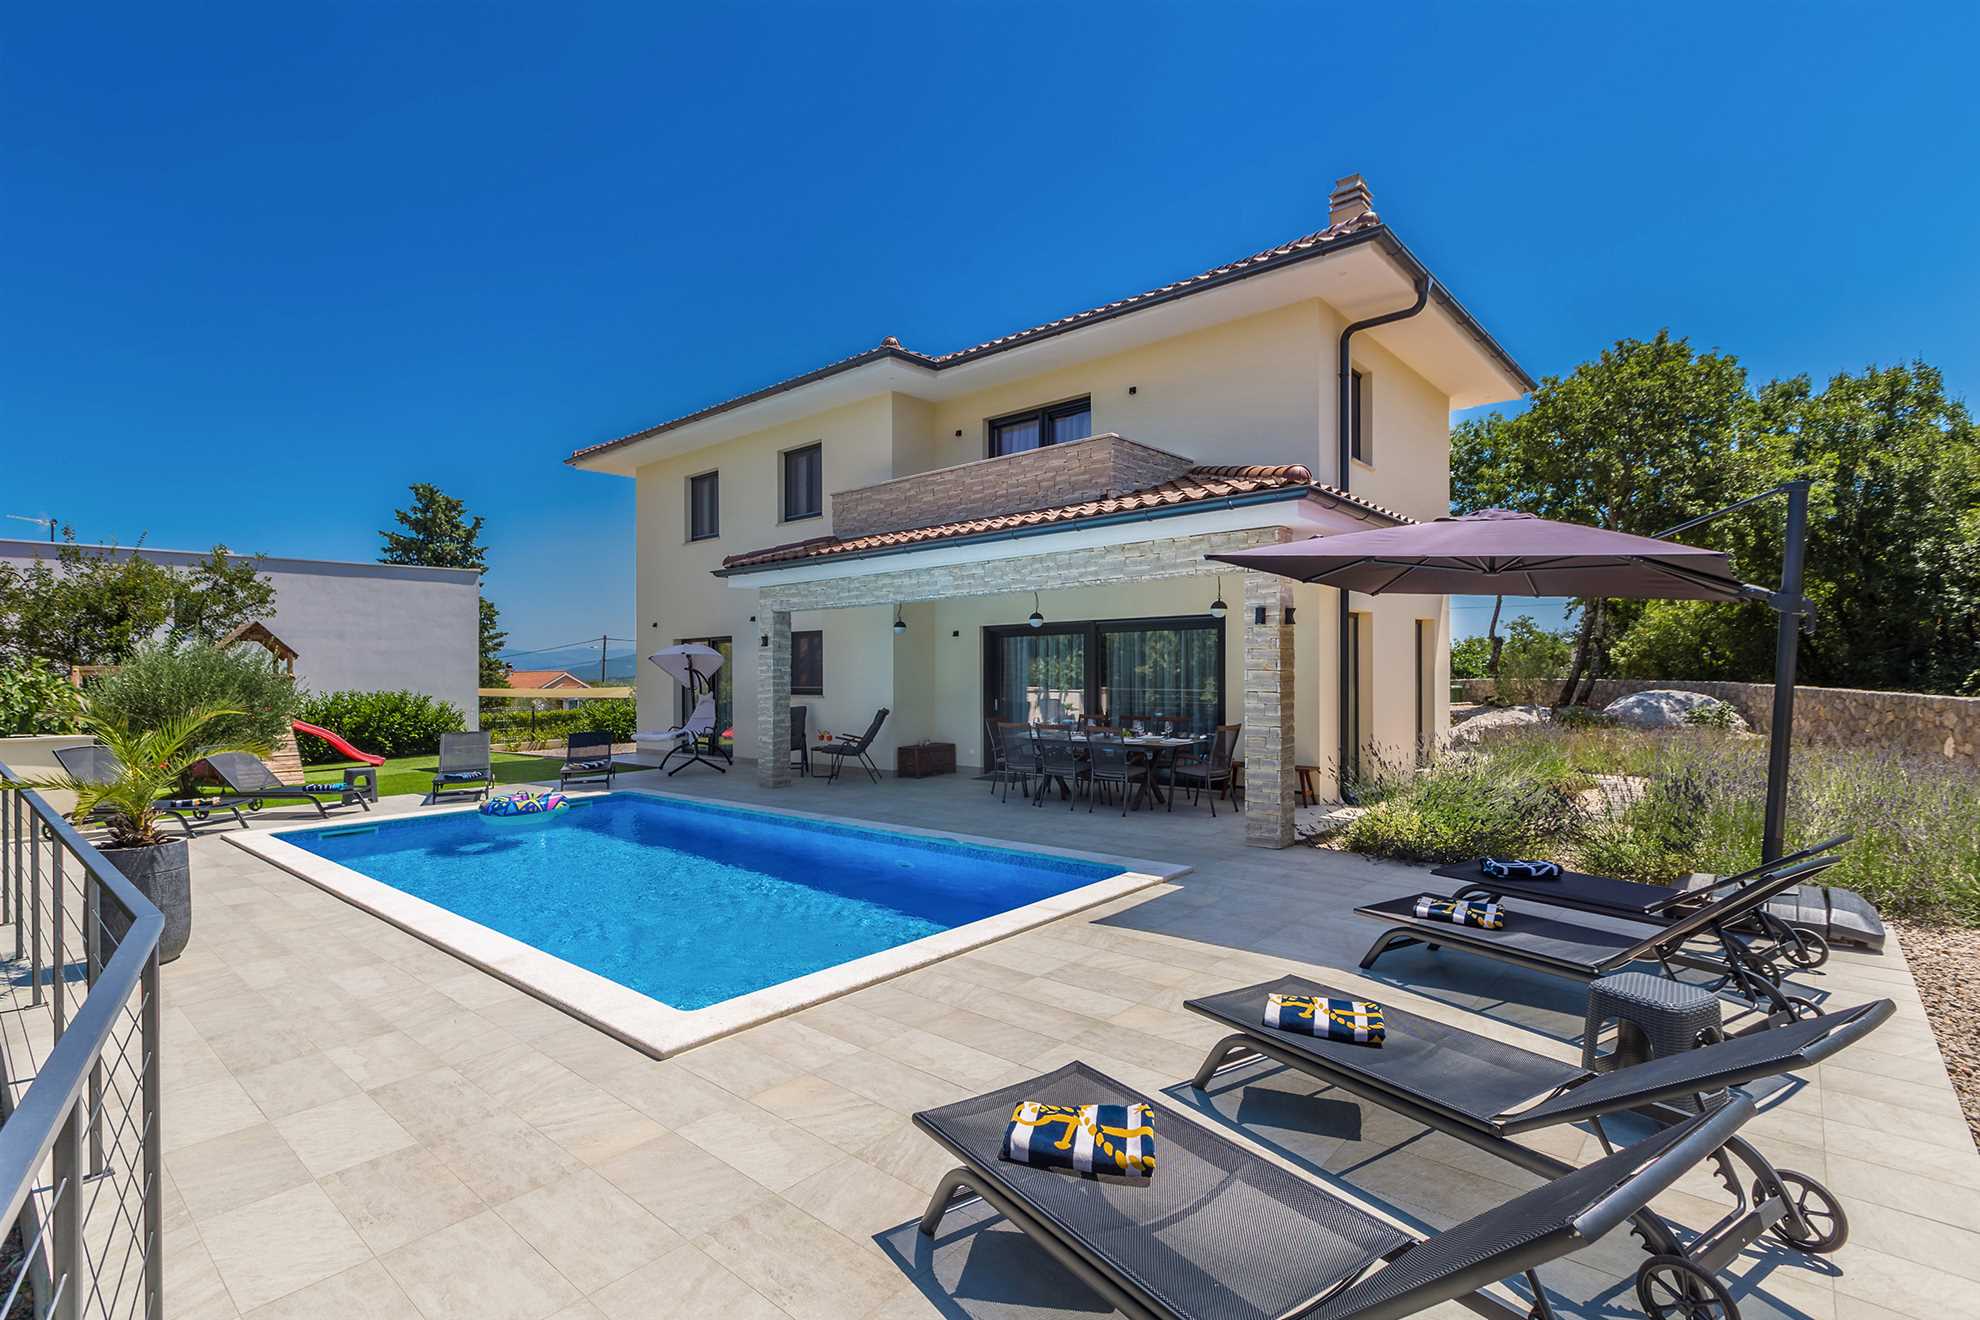 Villa Meraviglia with a swimming pool.